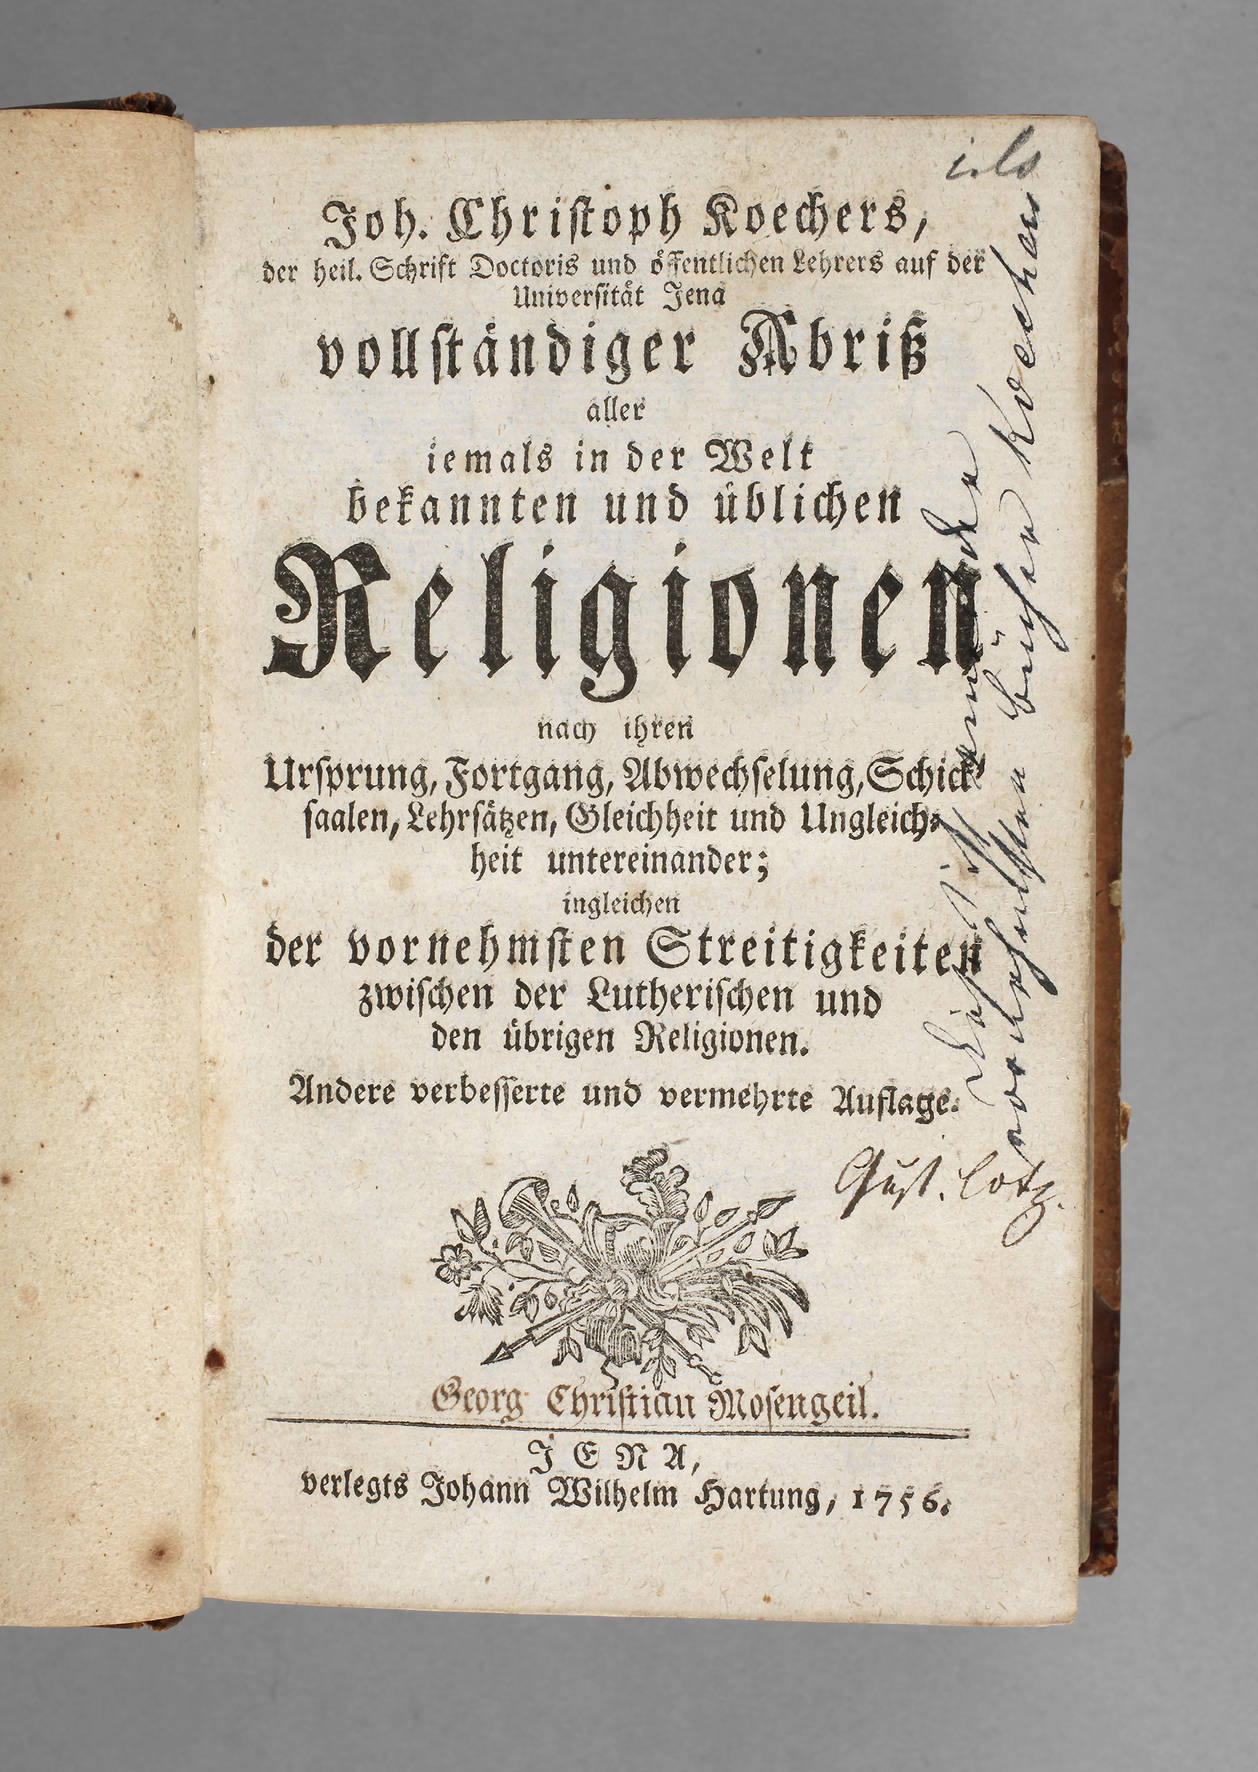 Koechers Abriss aller Religionen 1756